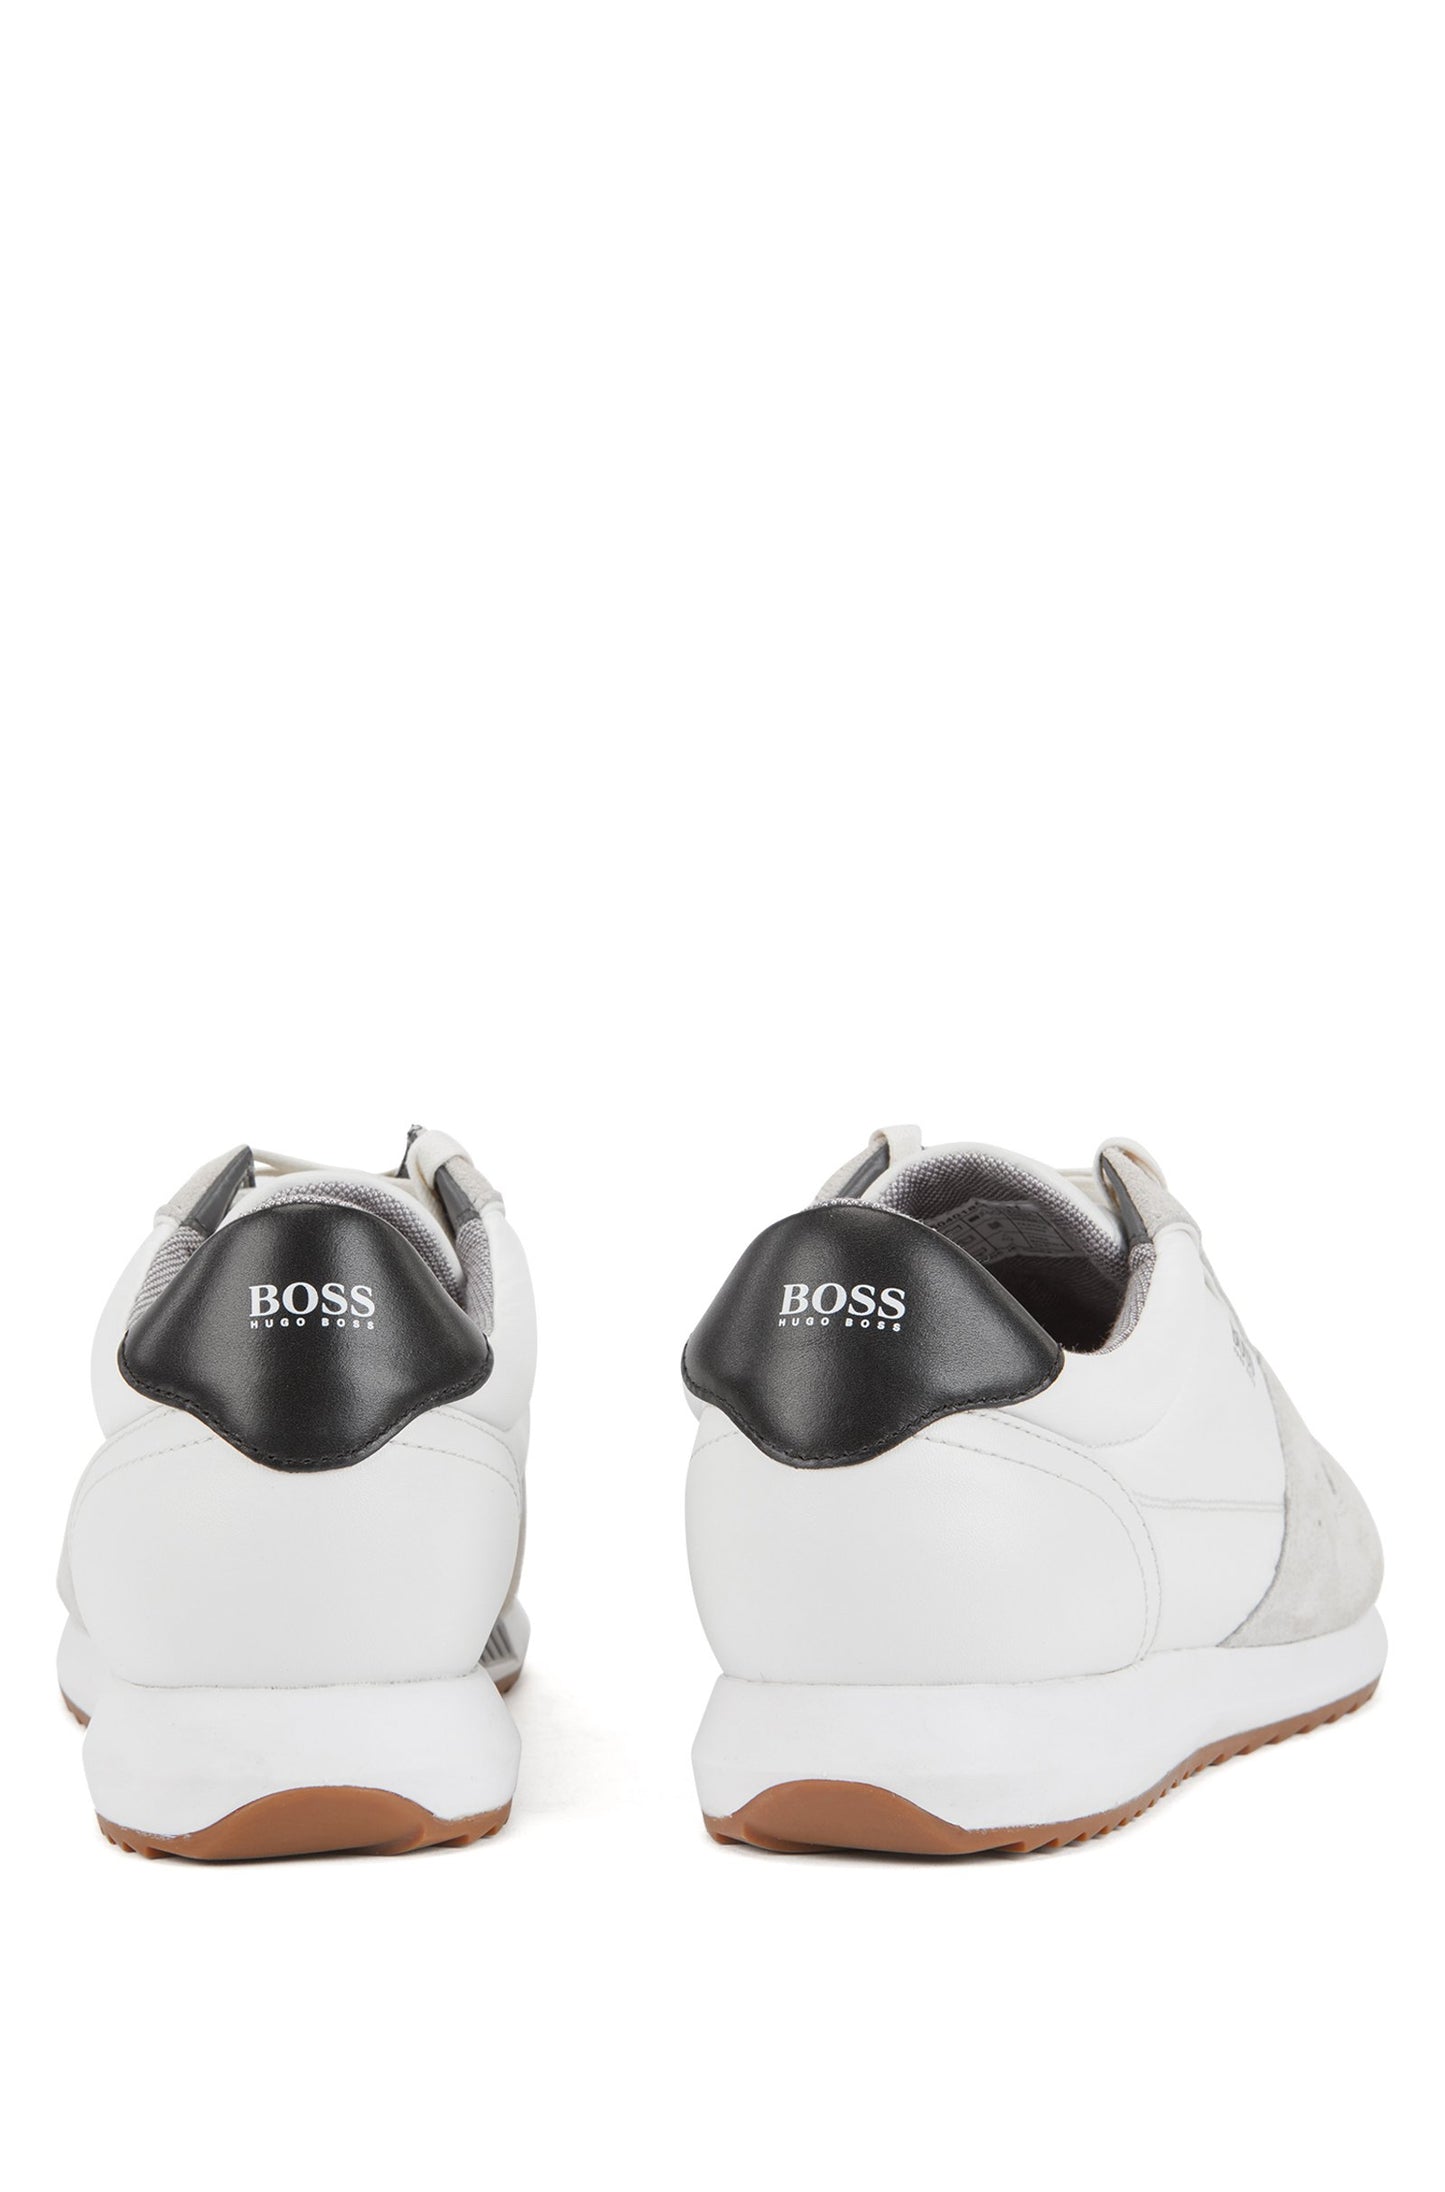 Hugo Boss footwear 50401854-100 Sonic runn tech white